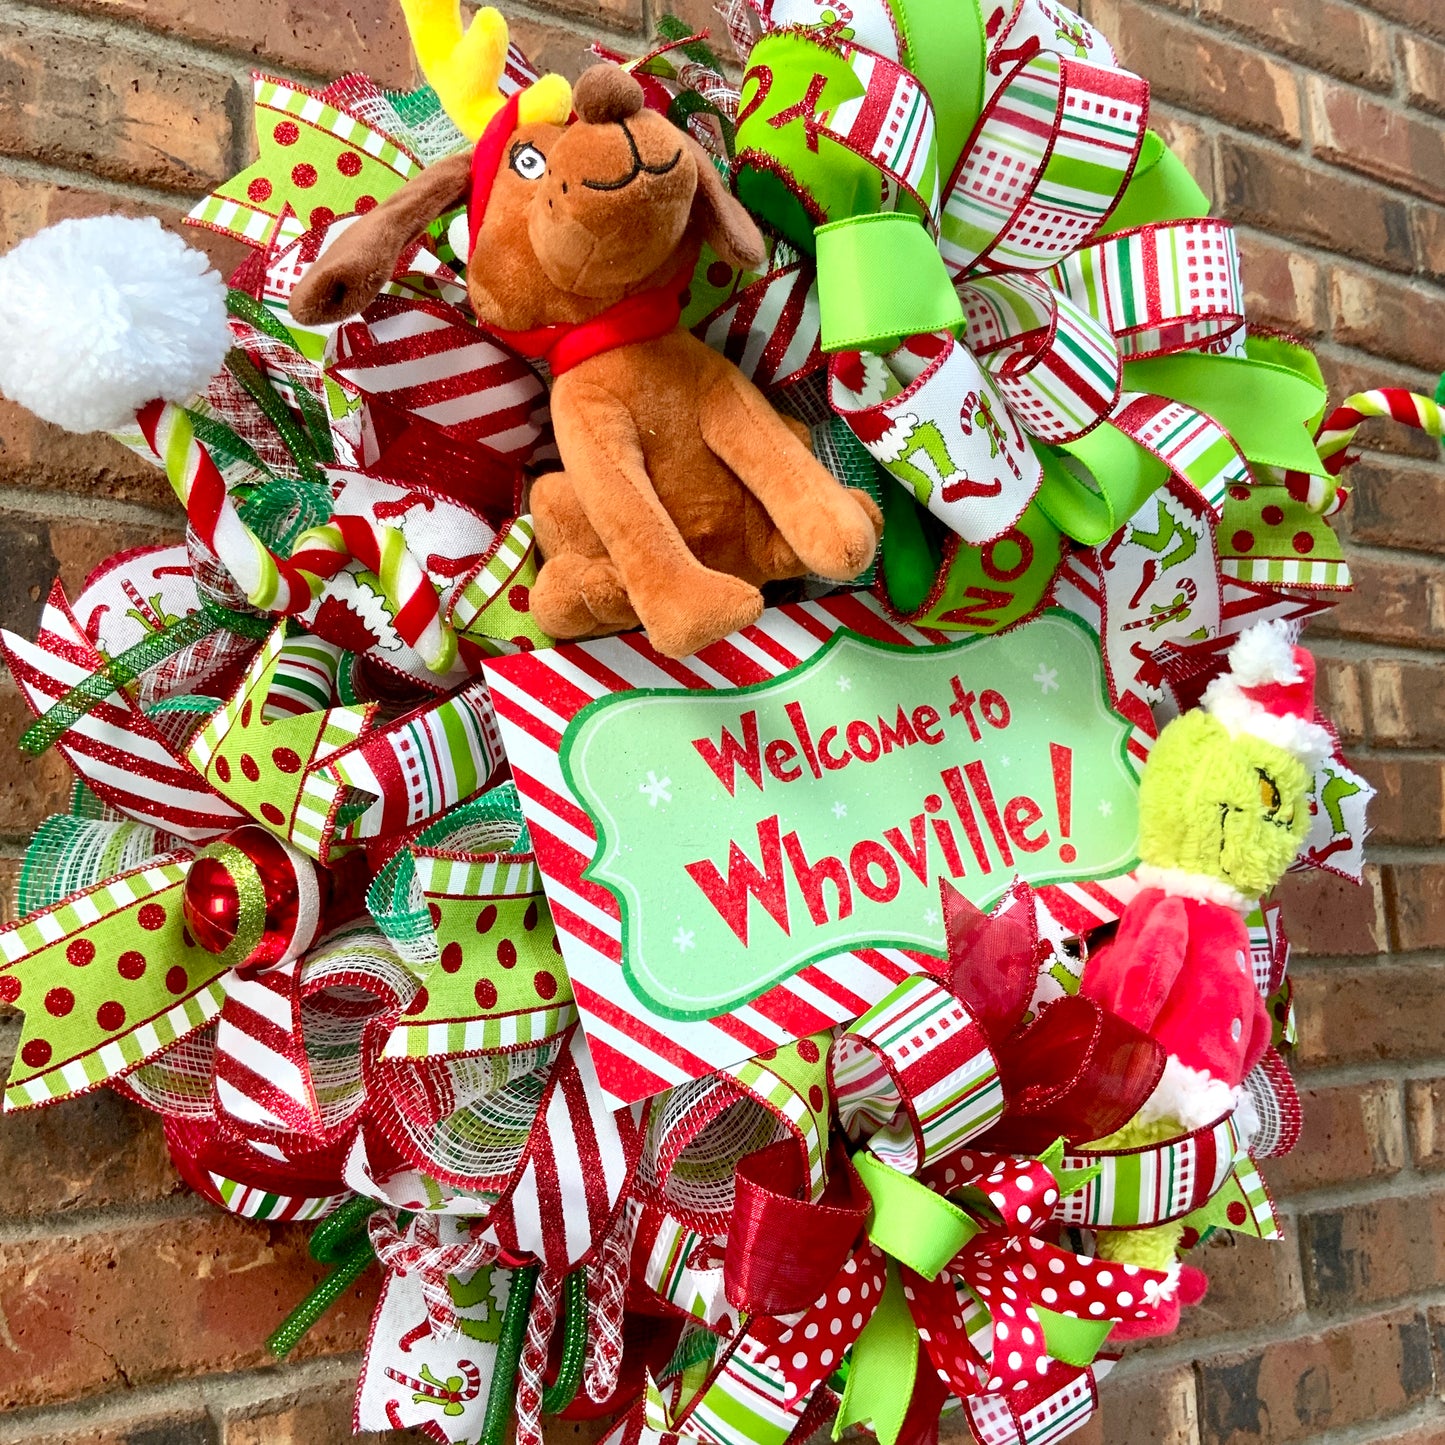 Christmas Grinch Wreath, Christmas Grinch Door Hanger, Grinch and Max Decor, Christmas Wreath, Grinch Door Hanger